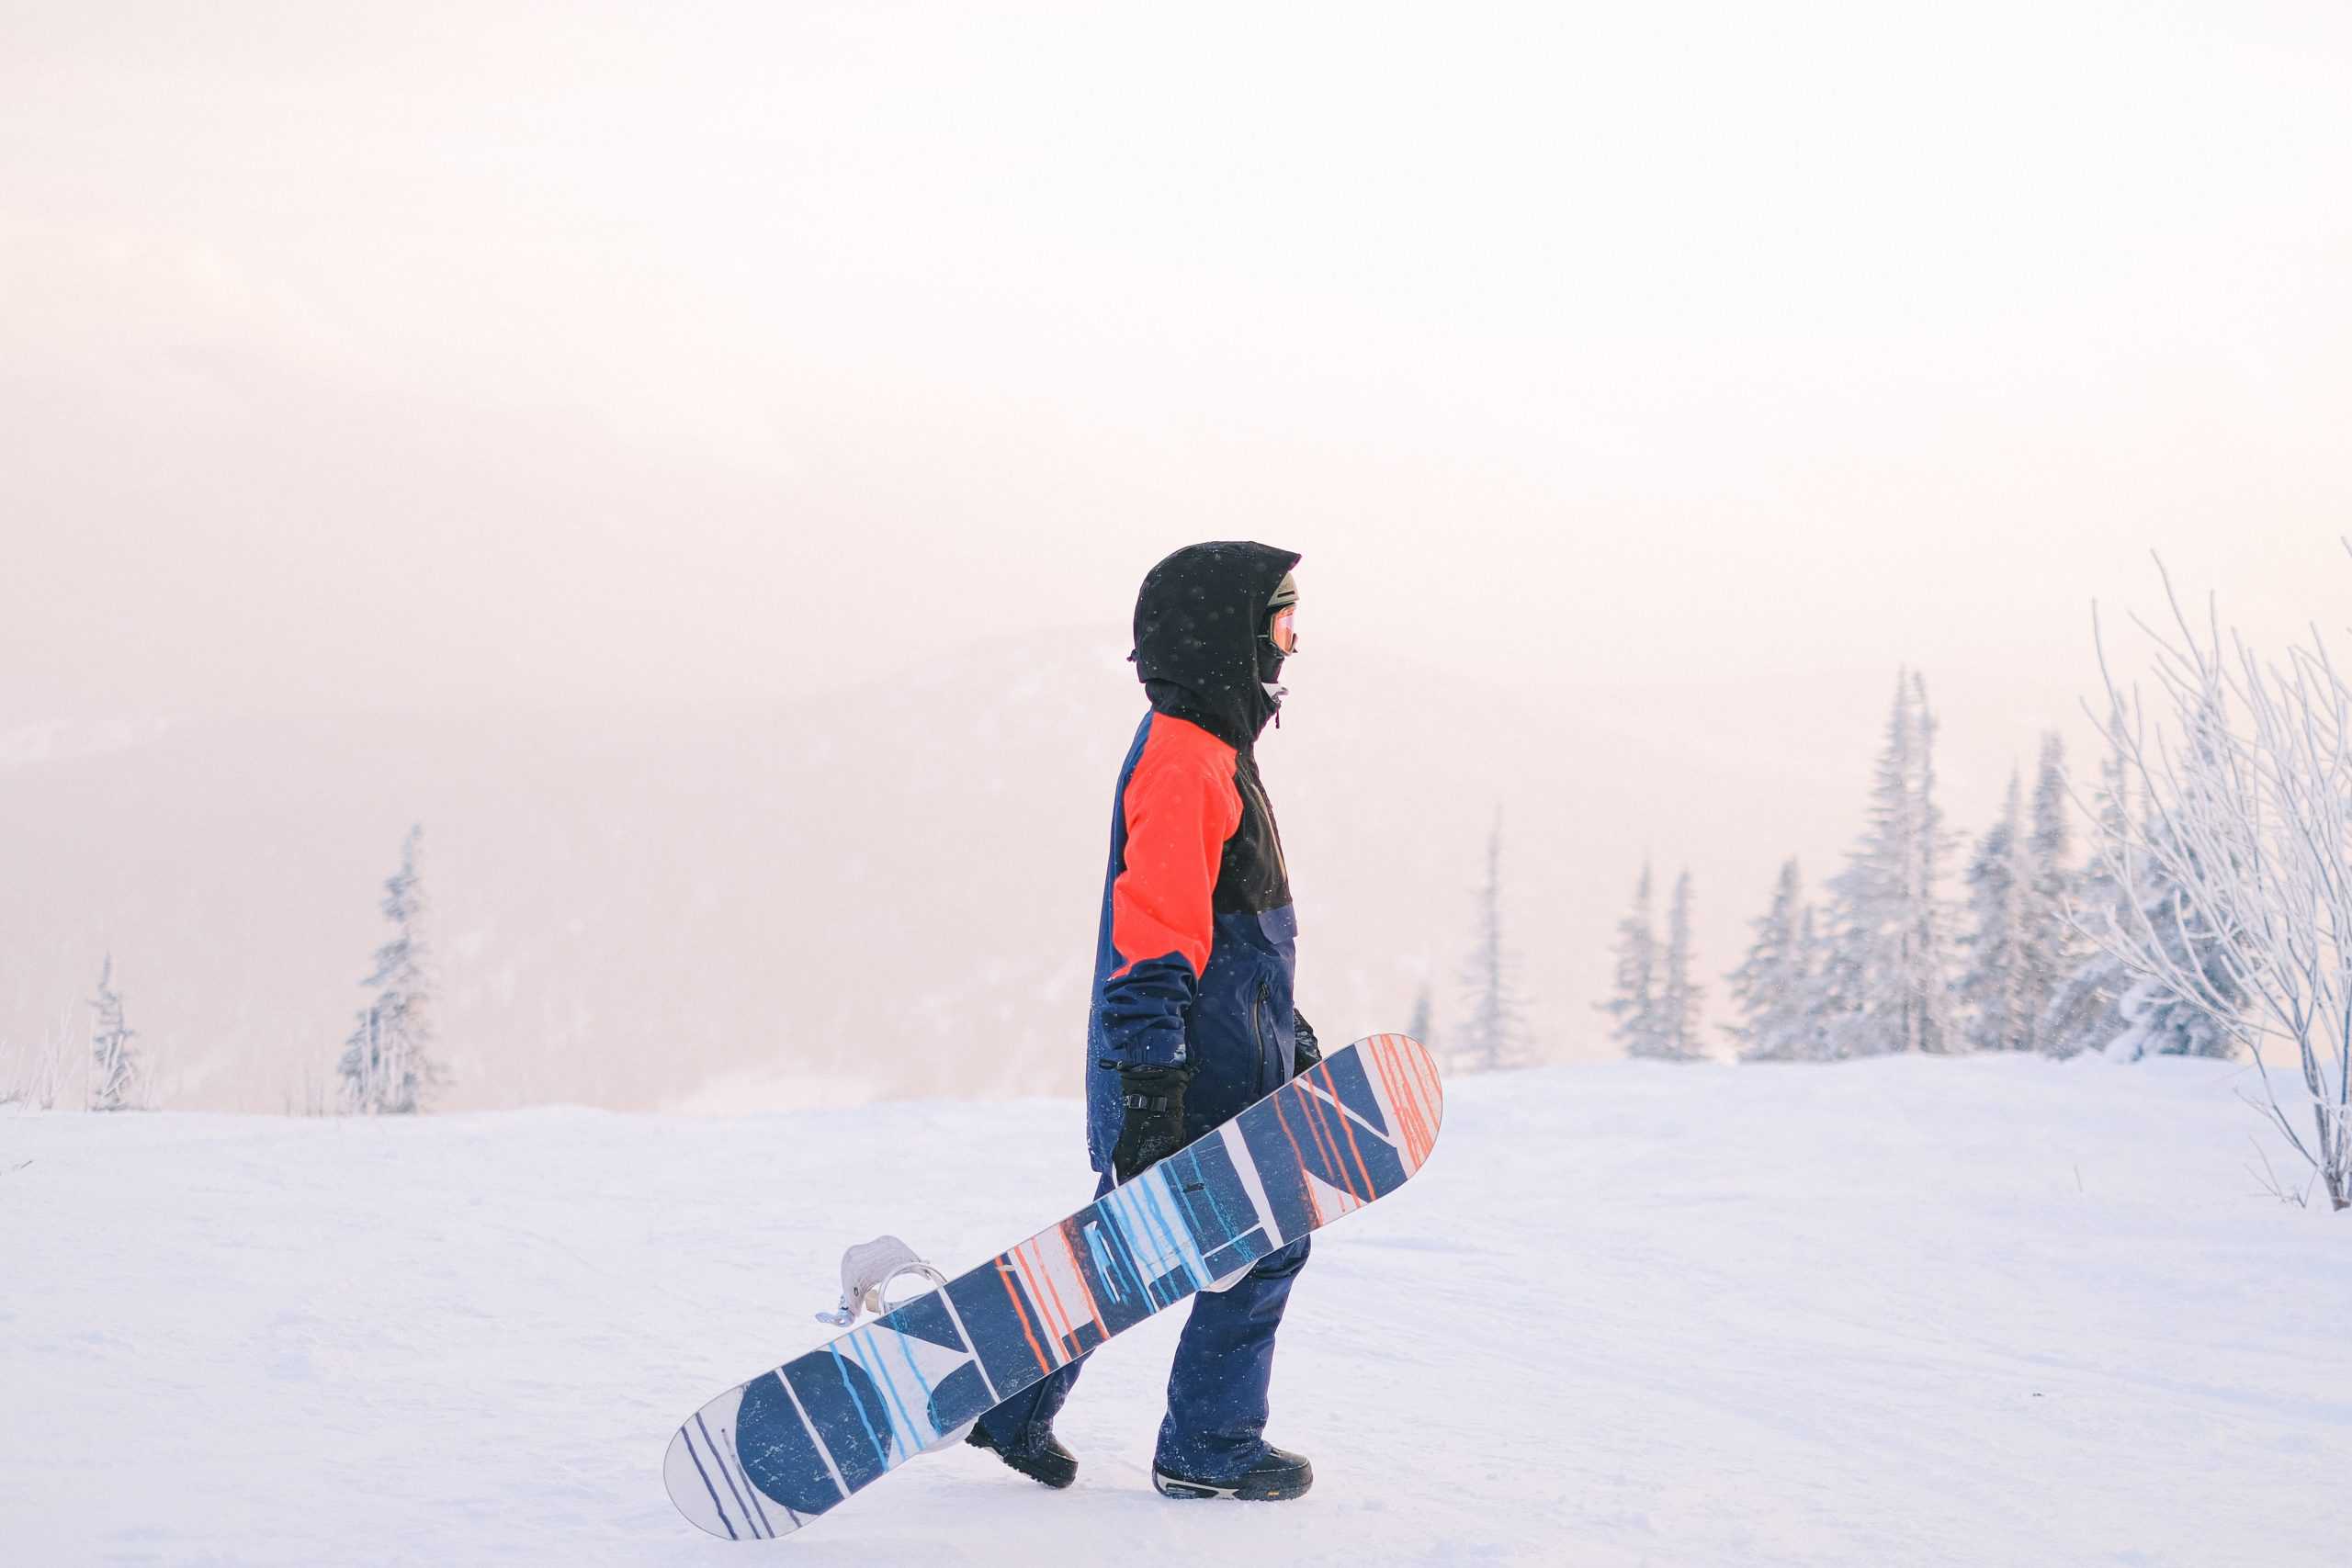 Snowboard Rentals in Breckenridge Colorado